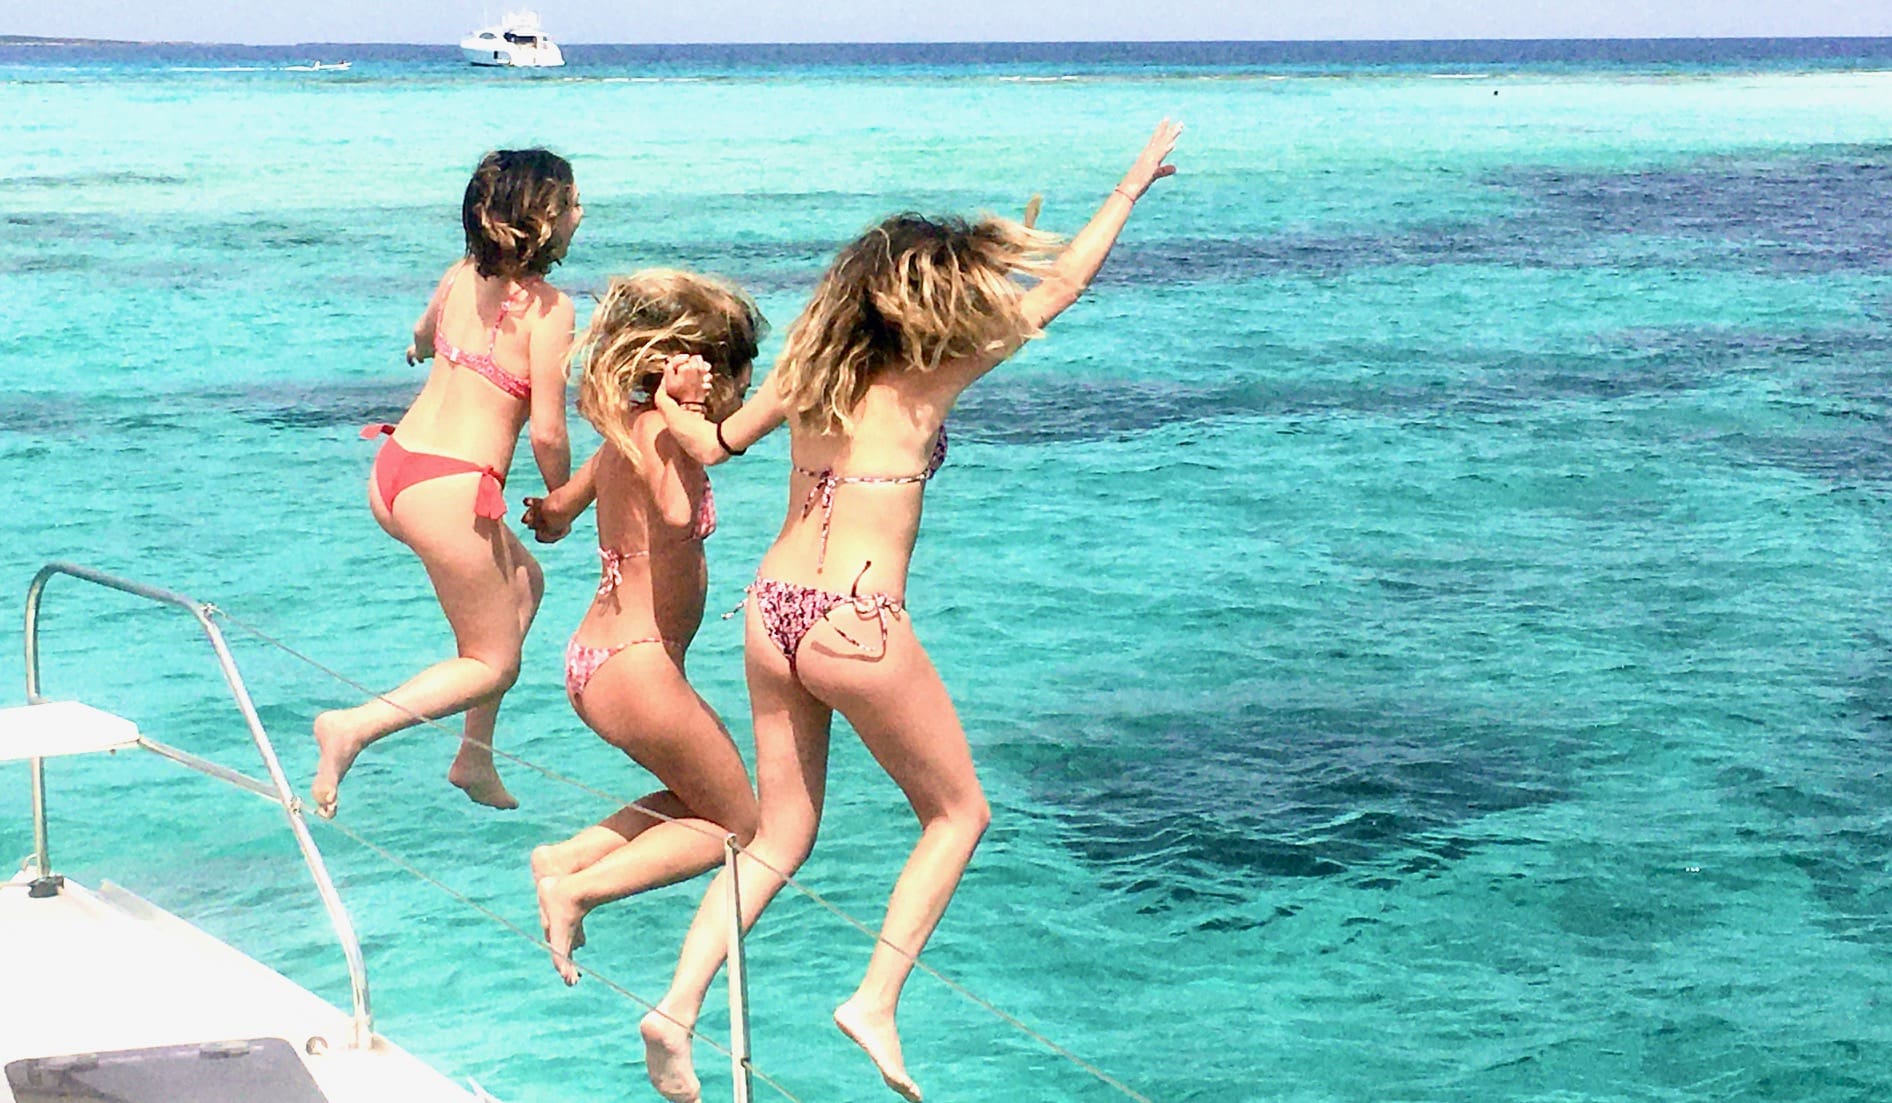 Location bateau Ibiza - Des filles sautant dans l'eau